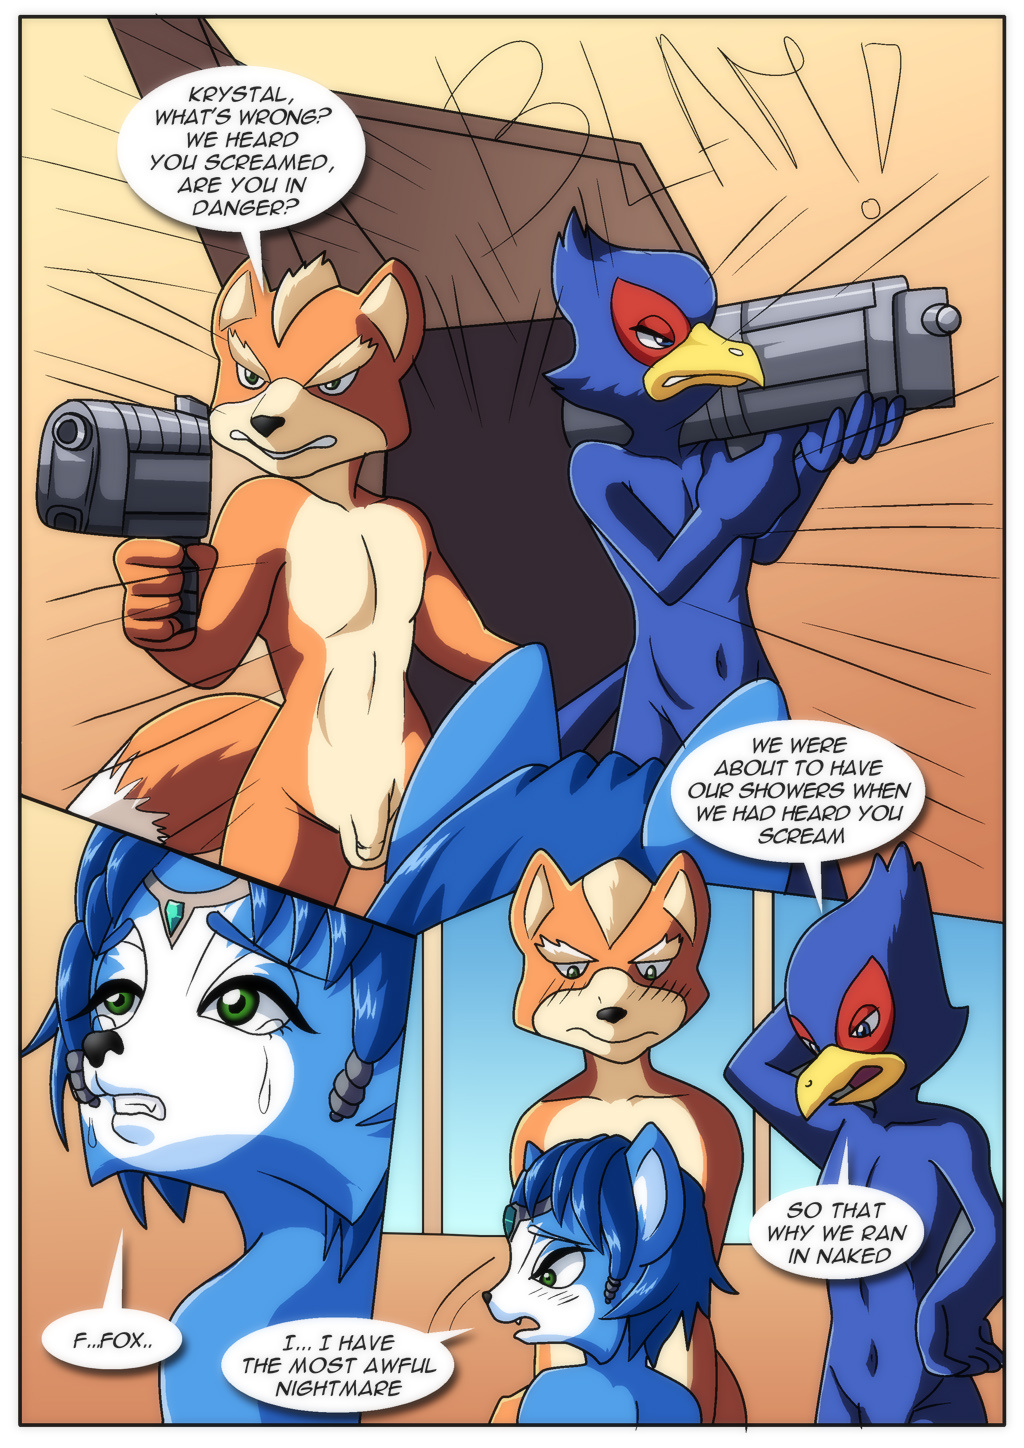 1024px x 1448px - Krystal and Star Fox fucking - Multporn Comics & Hentai manga